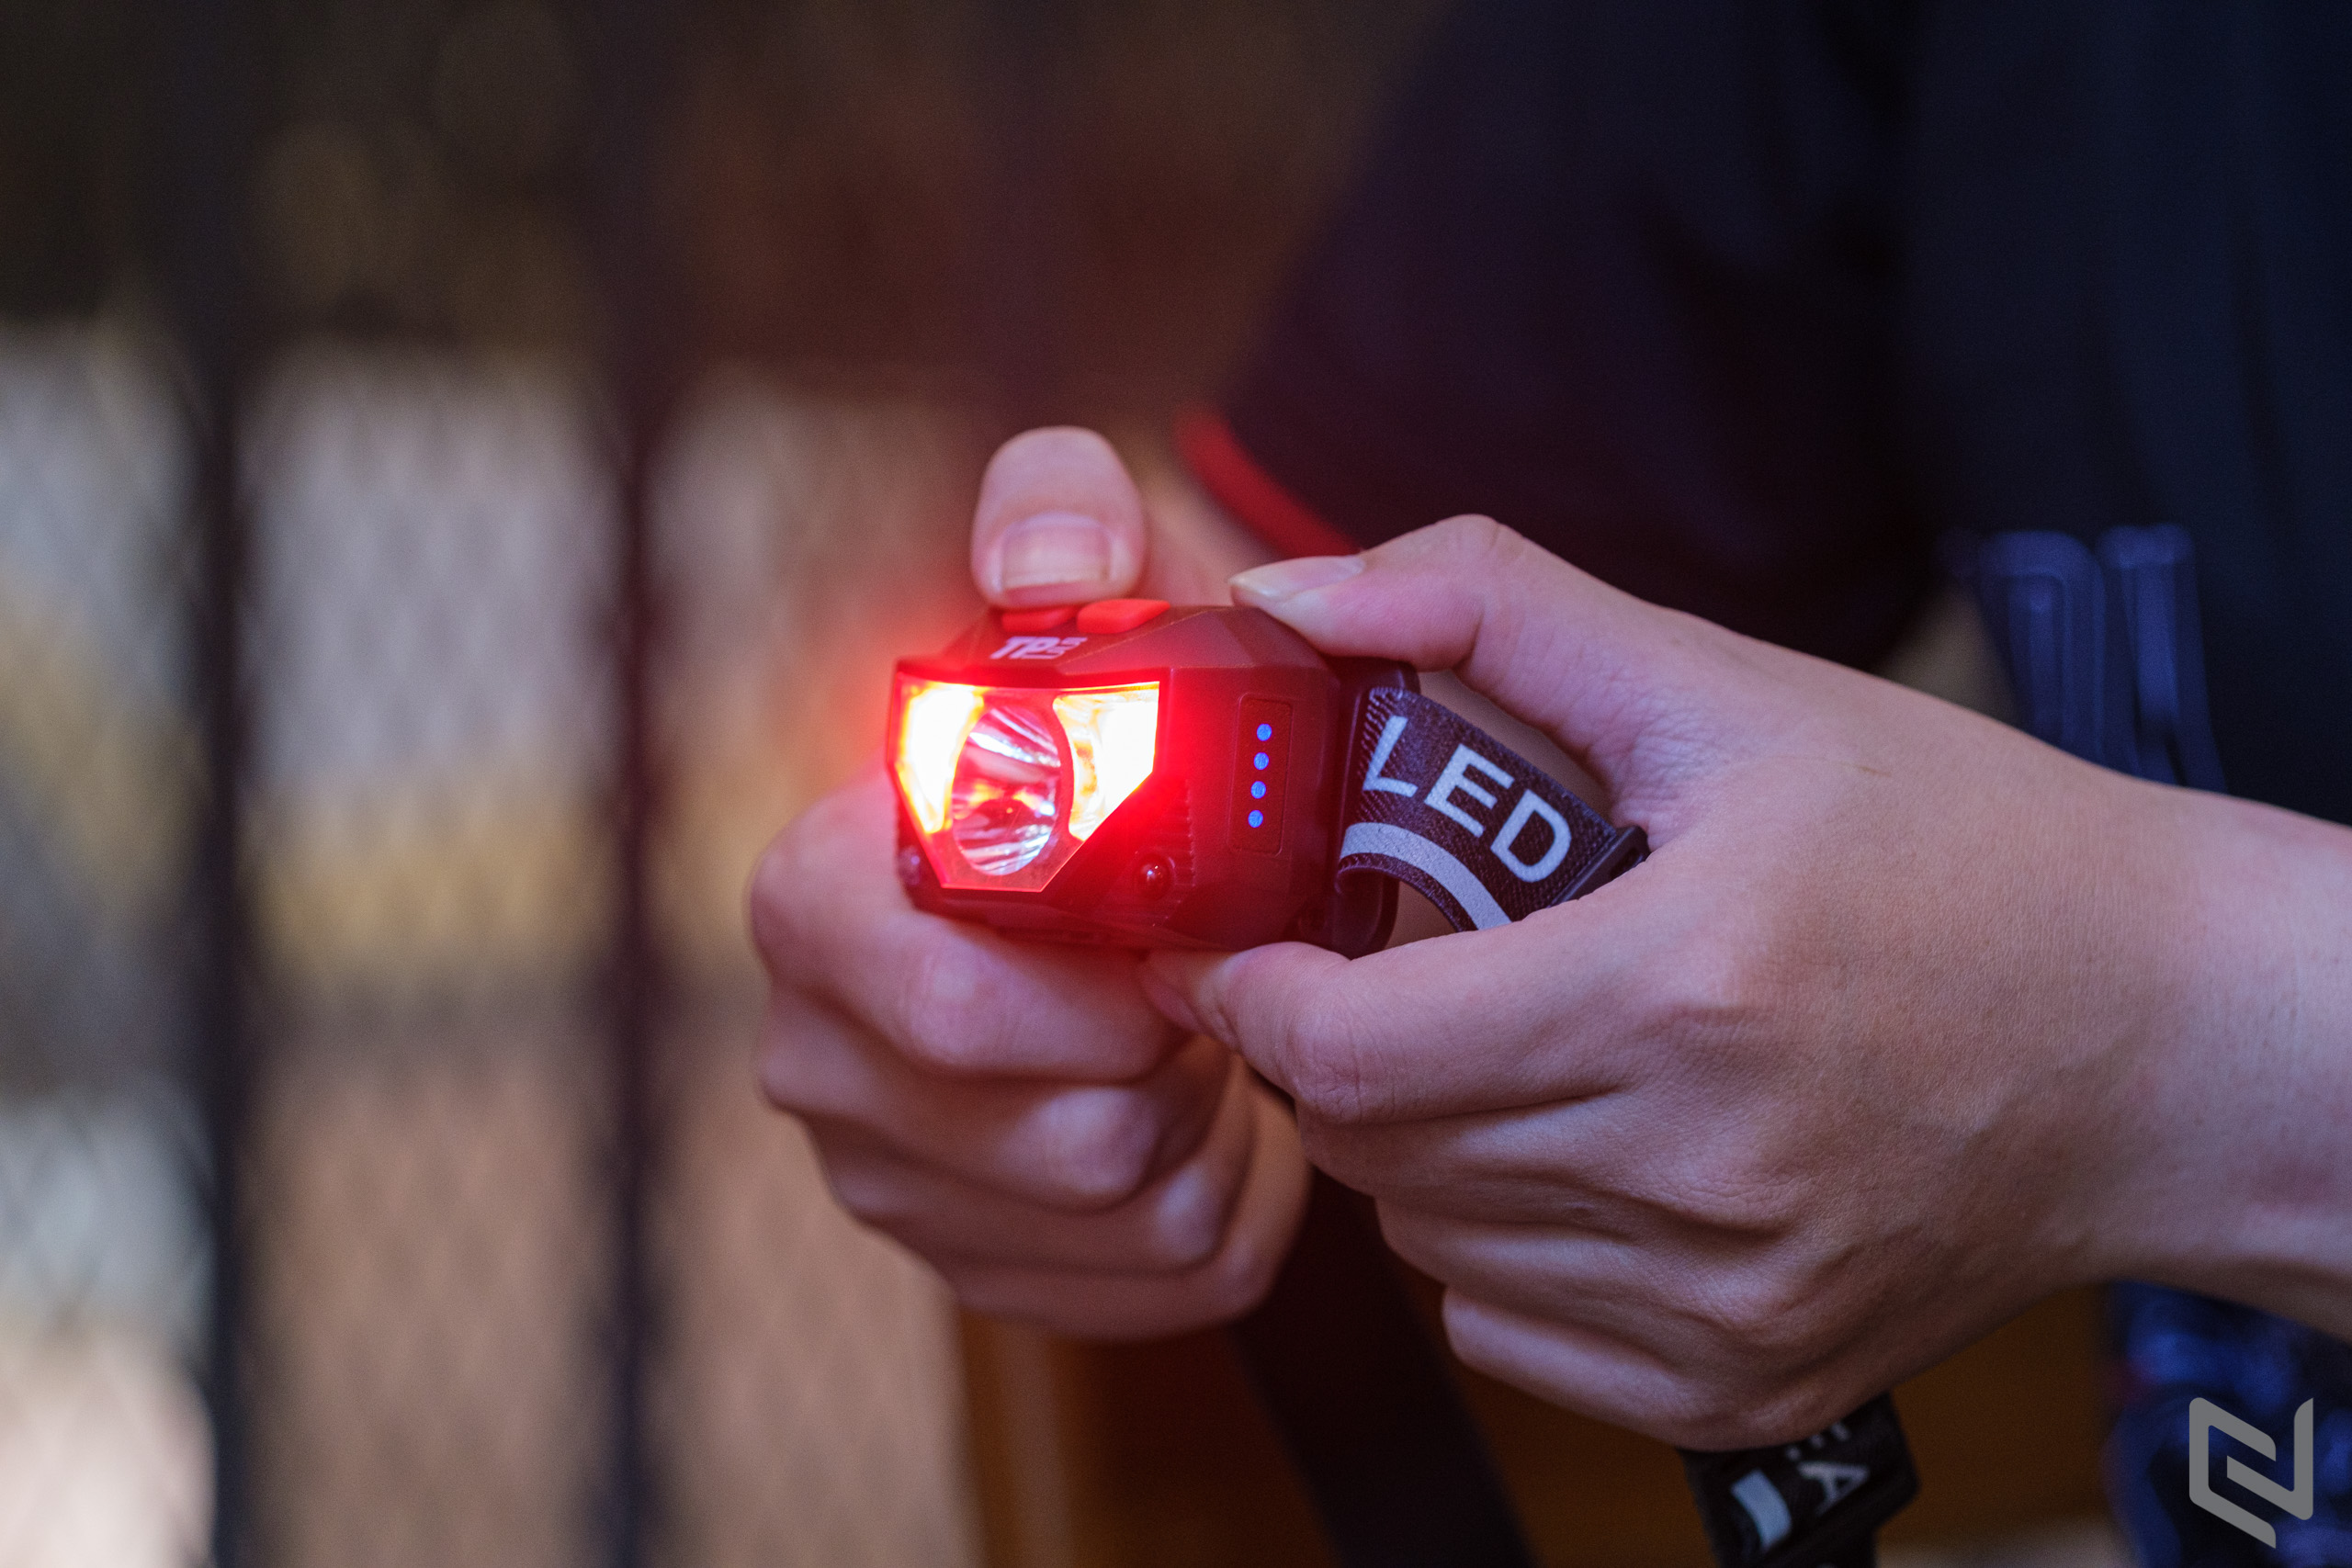 Trên tay Đèn pin đội đầu TPE, độ sáng 300Lm, nhiều chế độ chiếu sáng, có cảm biến tắt mở tiện lợi